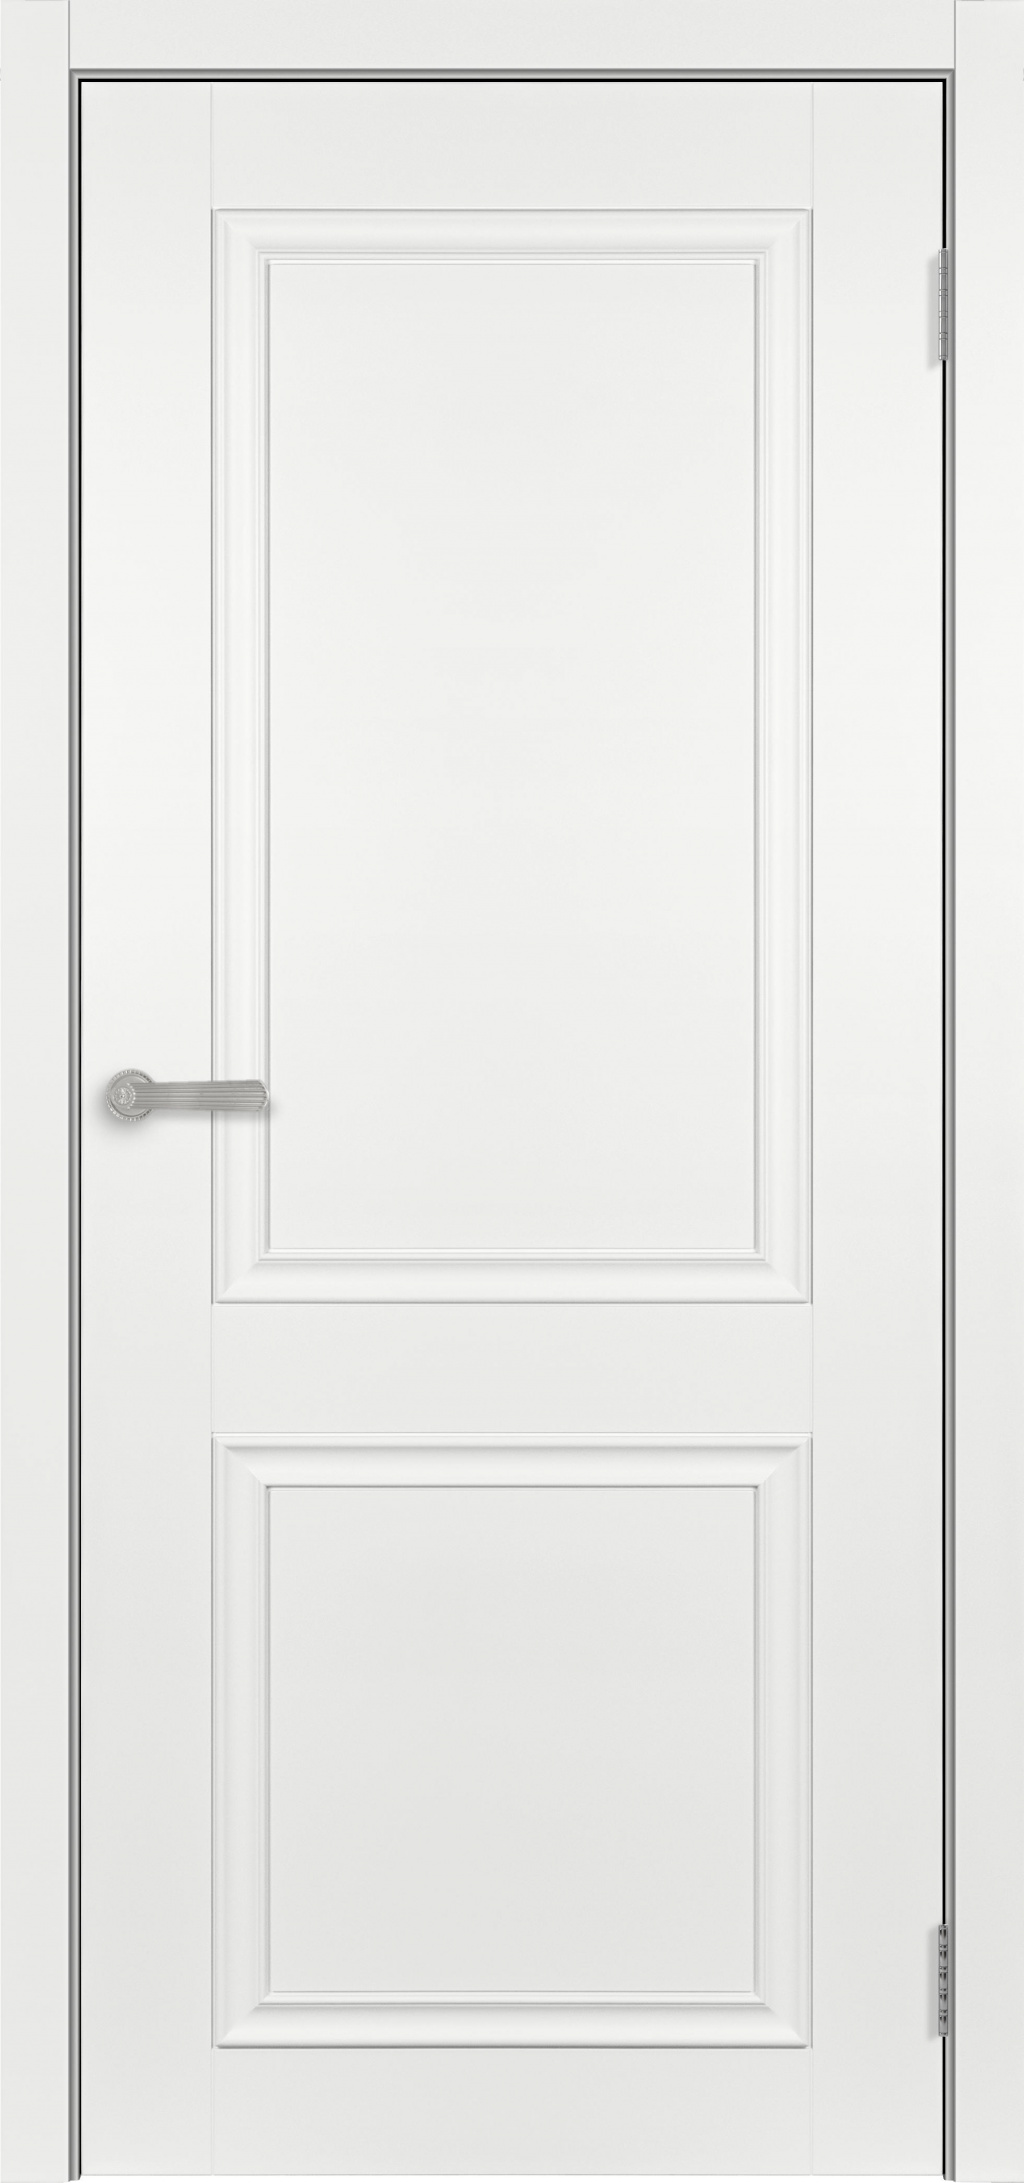 Тандор Межкомнатная дверь Прага-2 ДГ, арт. 25506 - фото №1